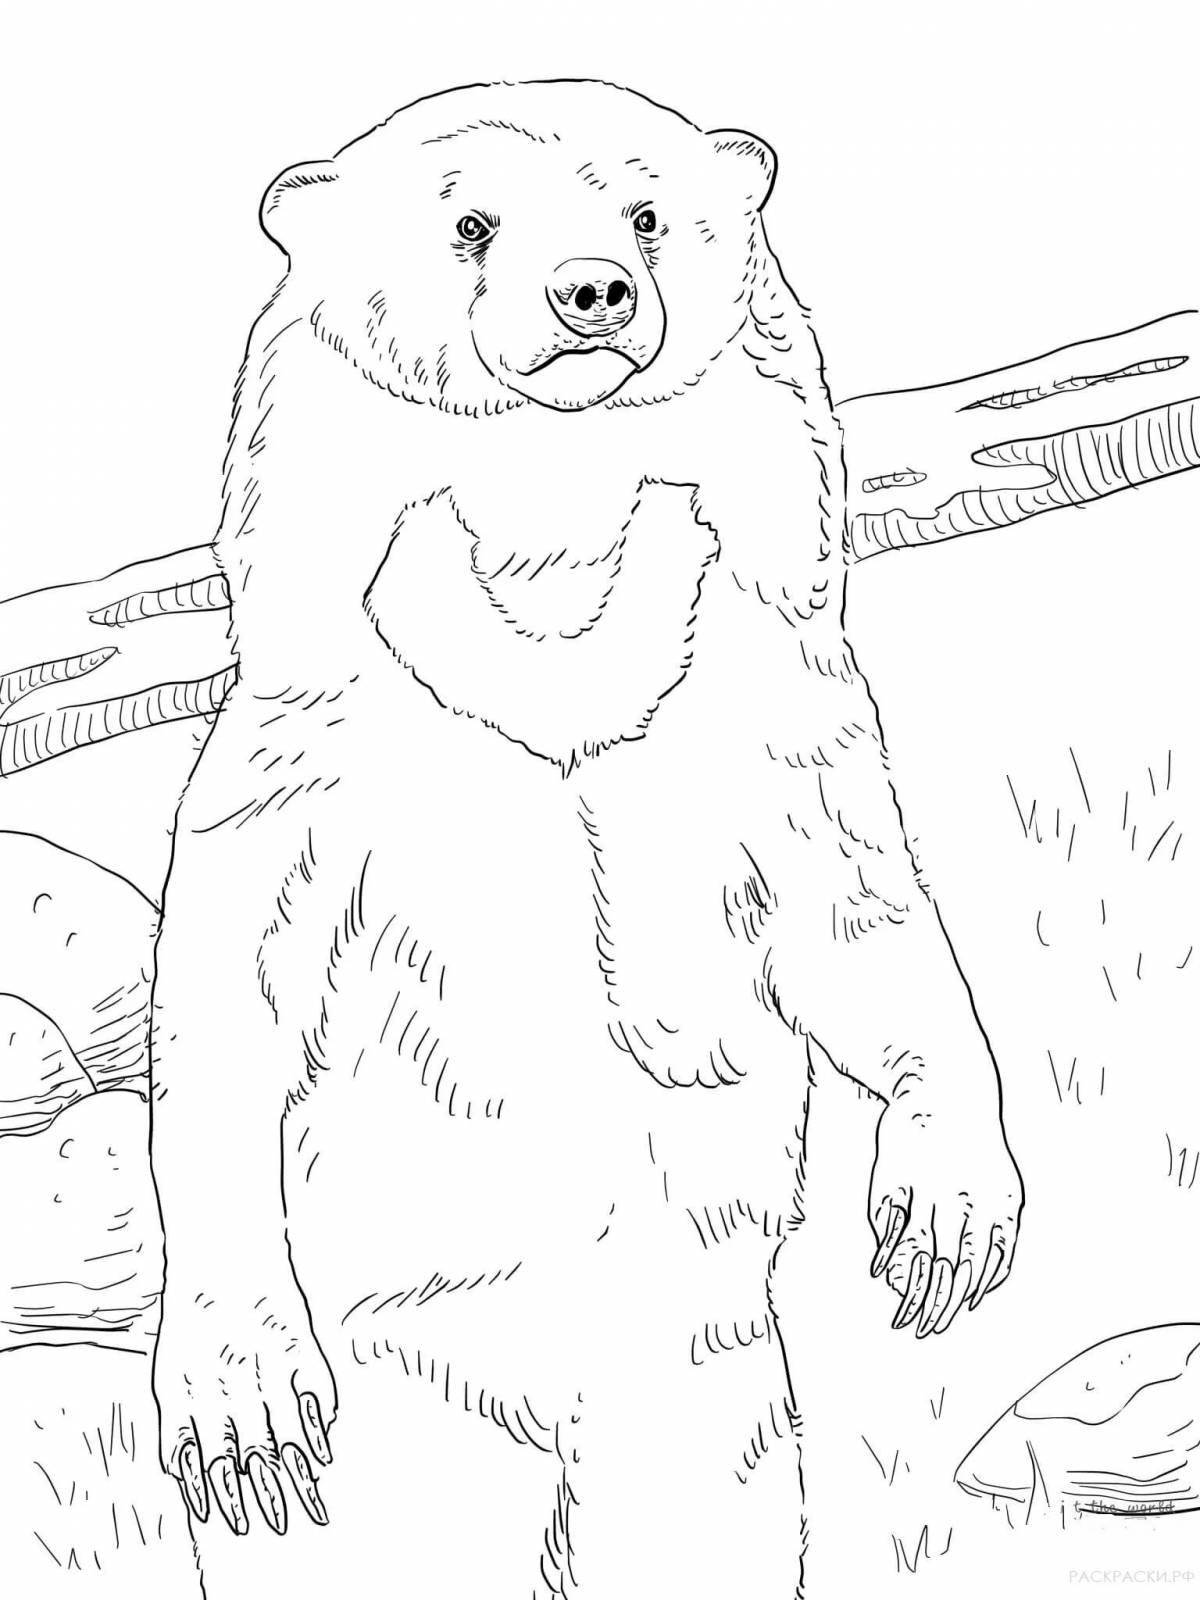 Huggable coloring bear